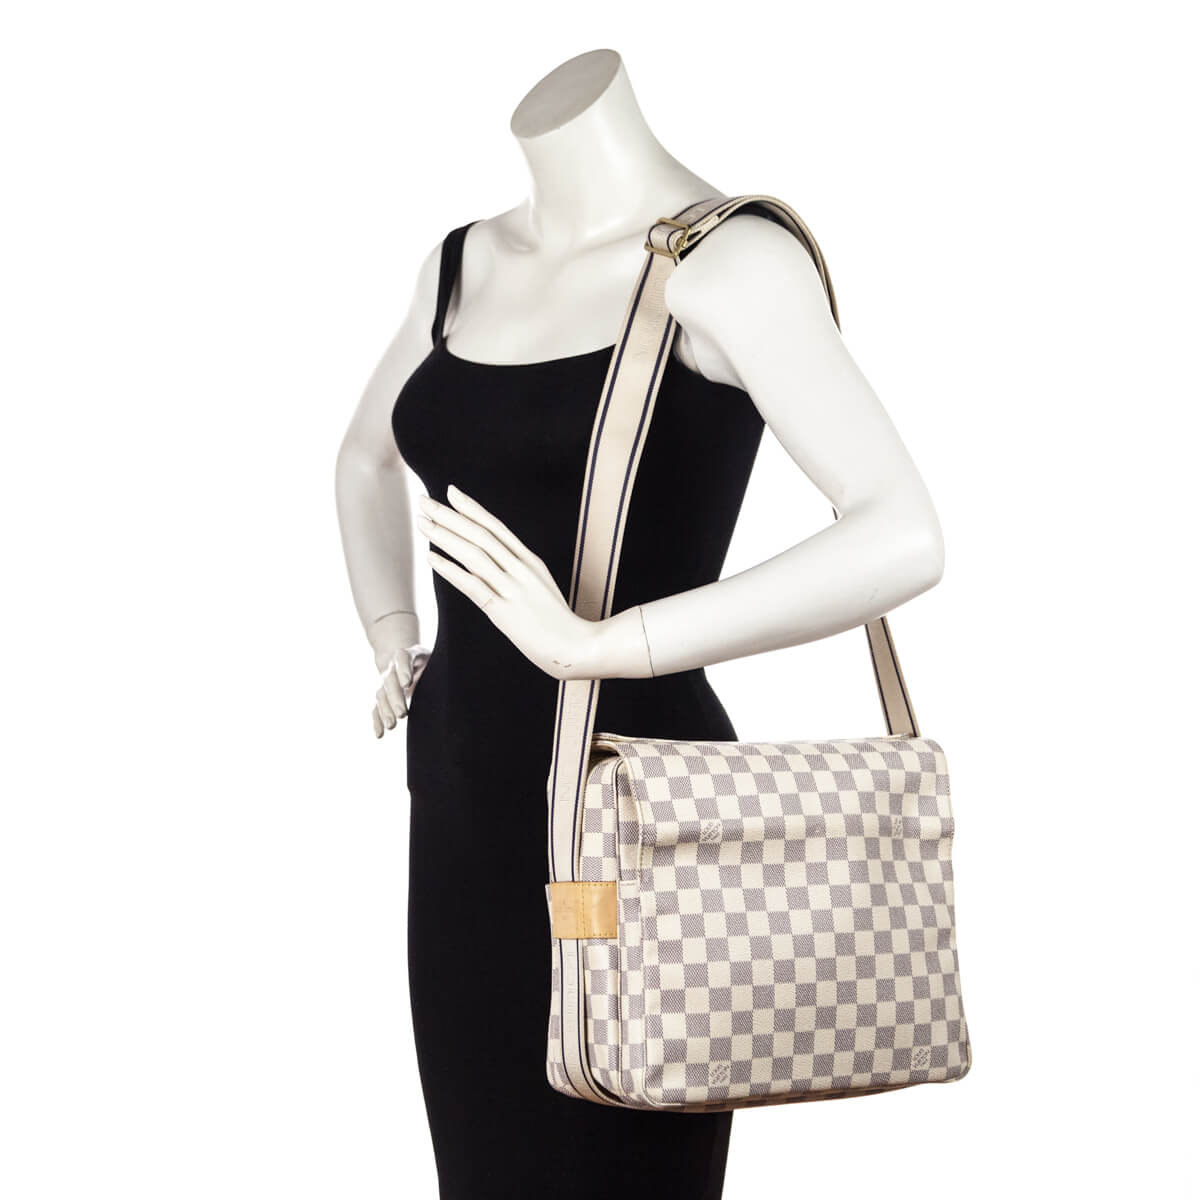 Louis Vuitton Damier Azur Naviglio - Neutrals Crossbody Bags